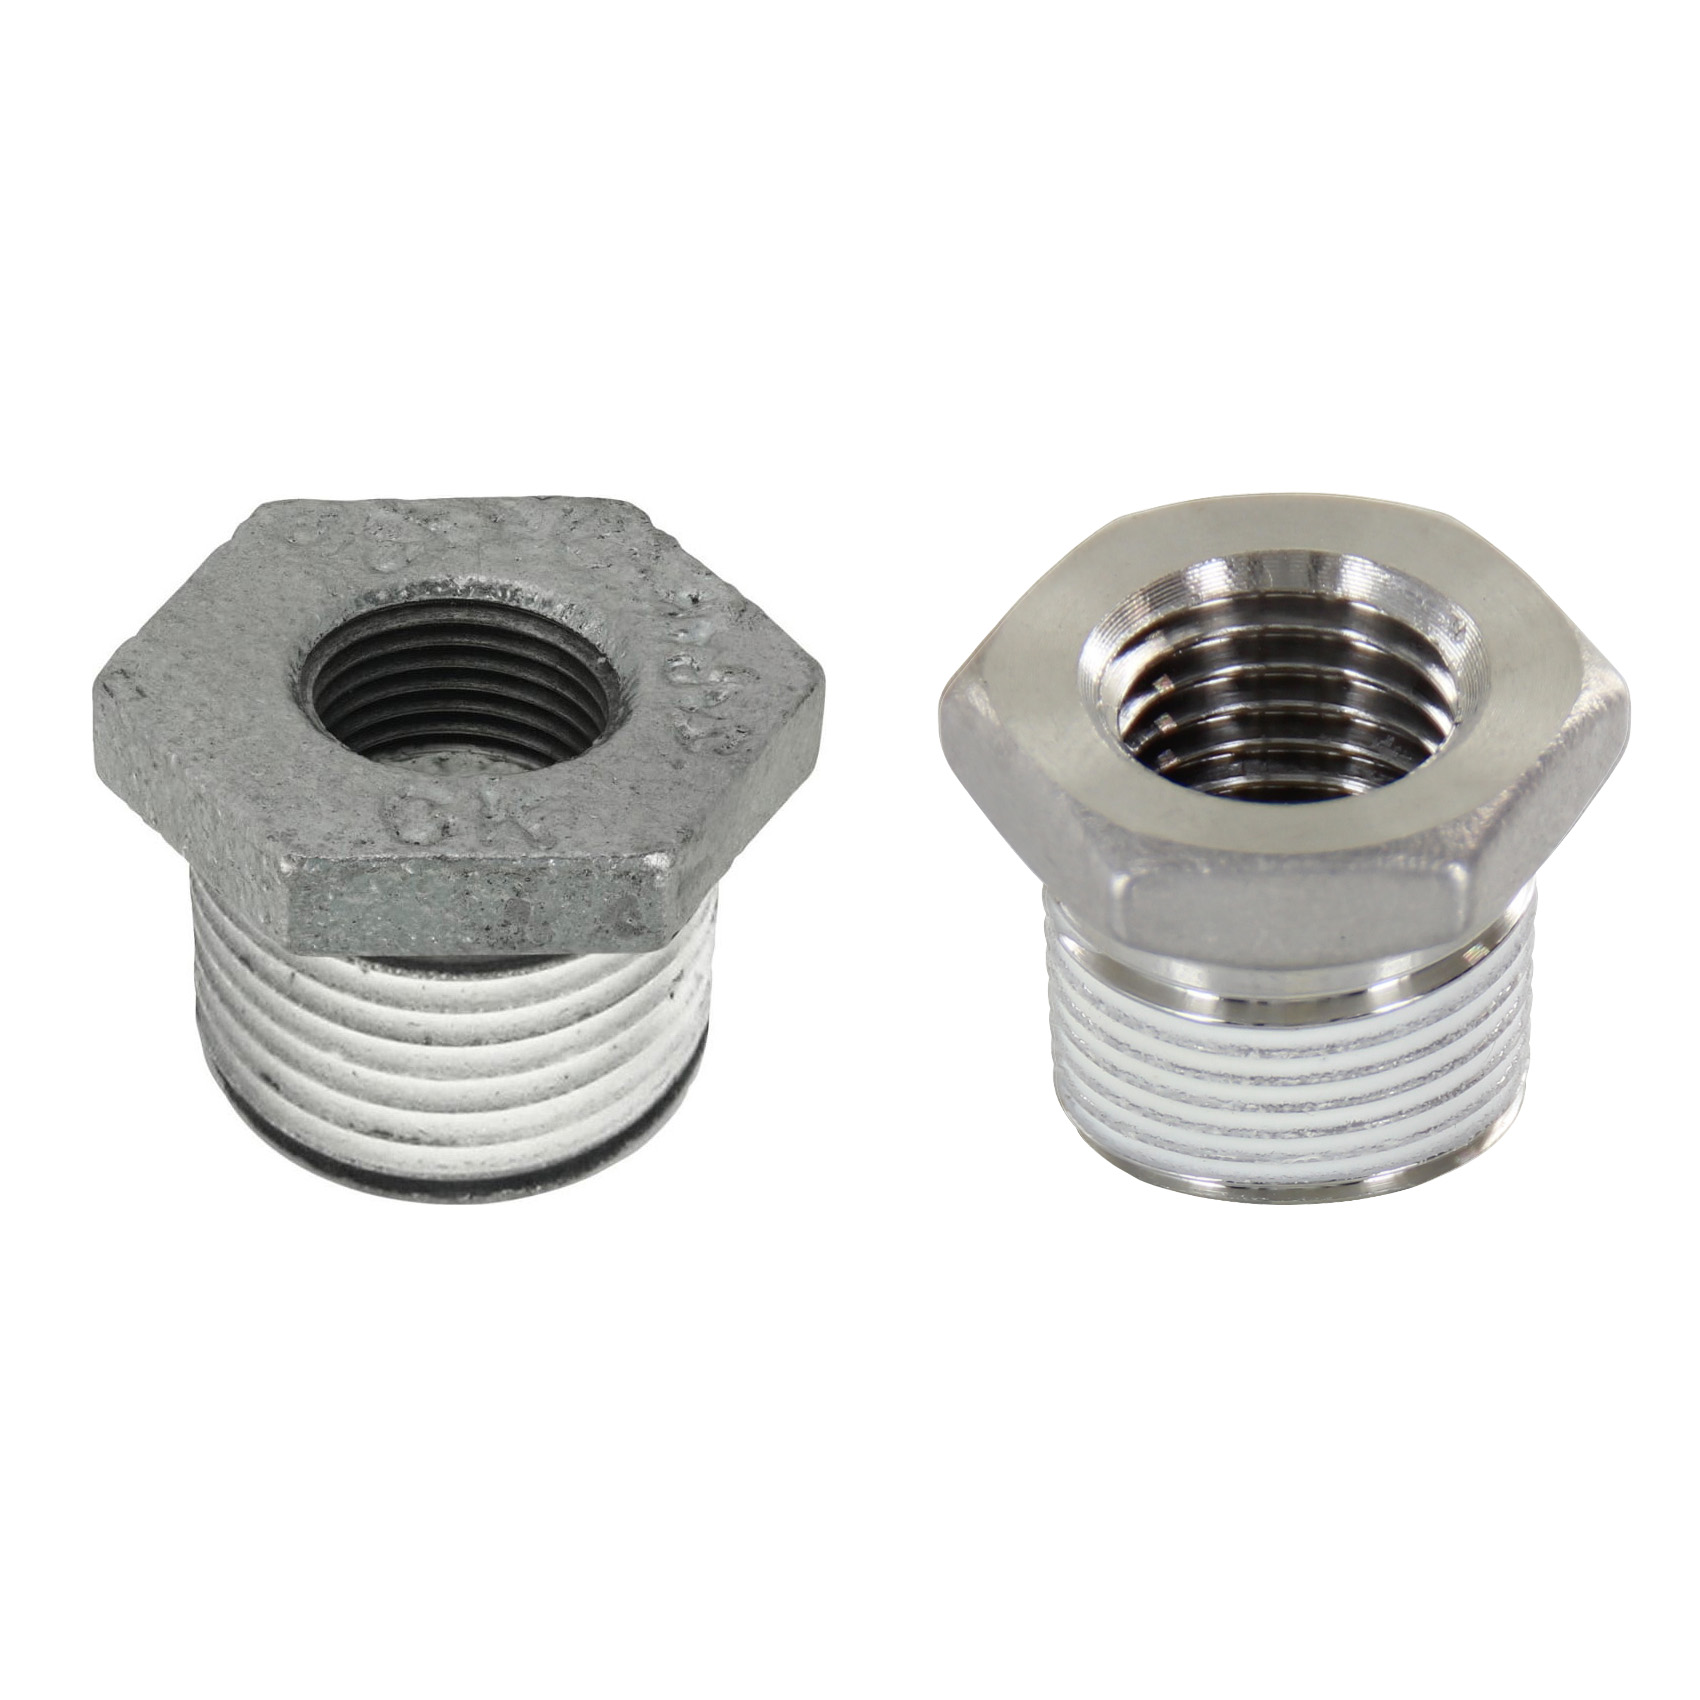 Low Pressure Screw Fittings - Thread Coated Type - Steel Pipe Fittings - Bushings (SGCPB34) 